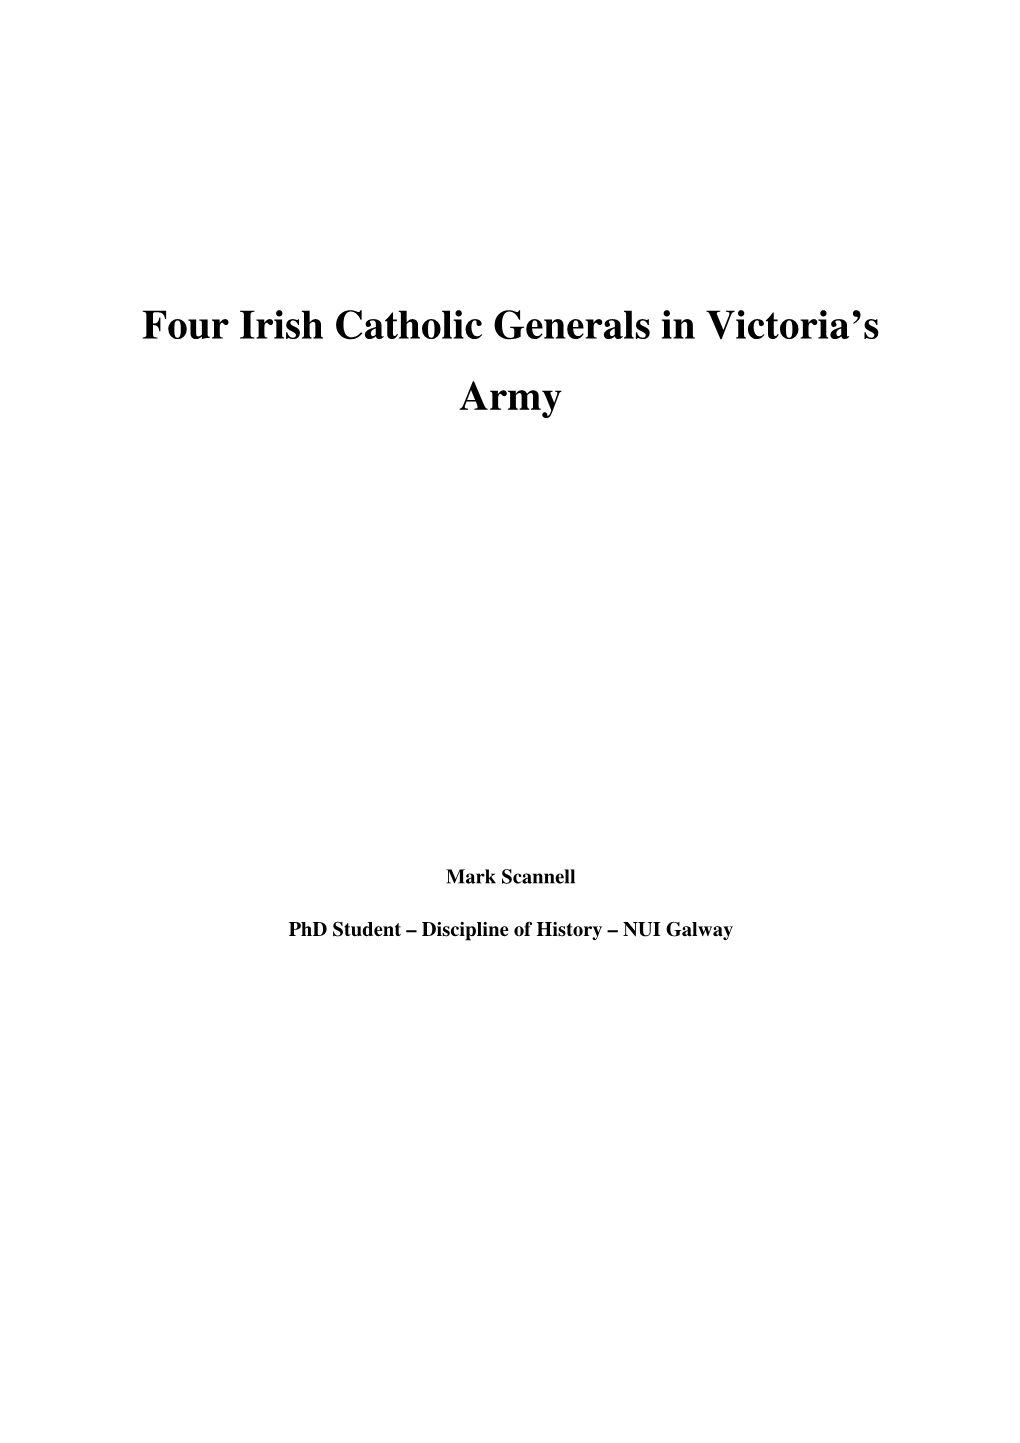 Four Irish Catholic Generals in Victoria's Army